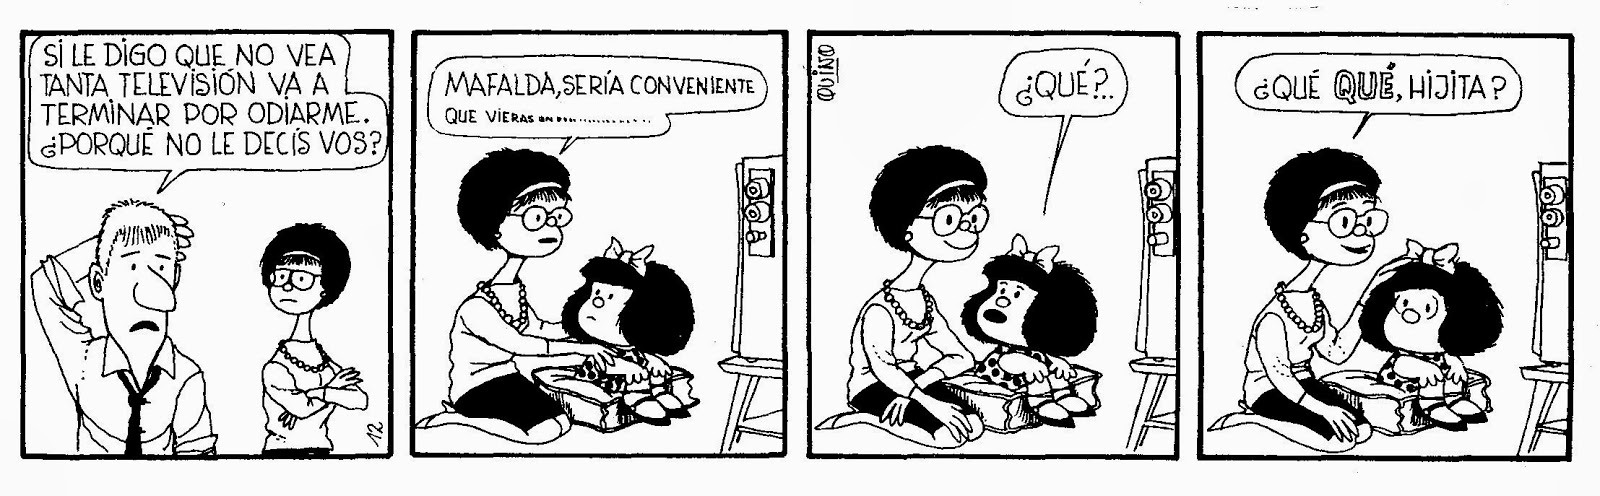 mafalda television 1 - Los niños menores de tres años no deberían ver la televisión